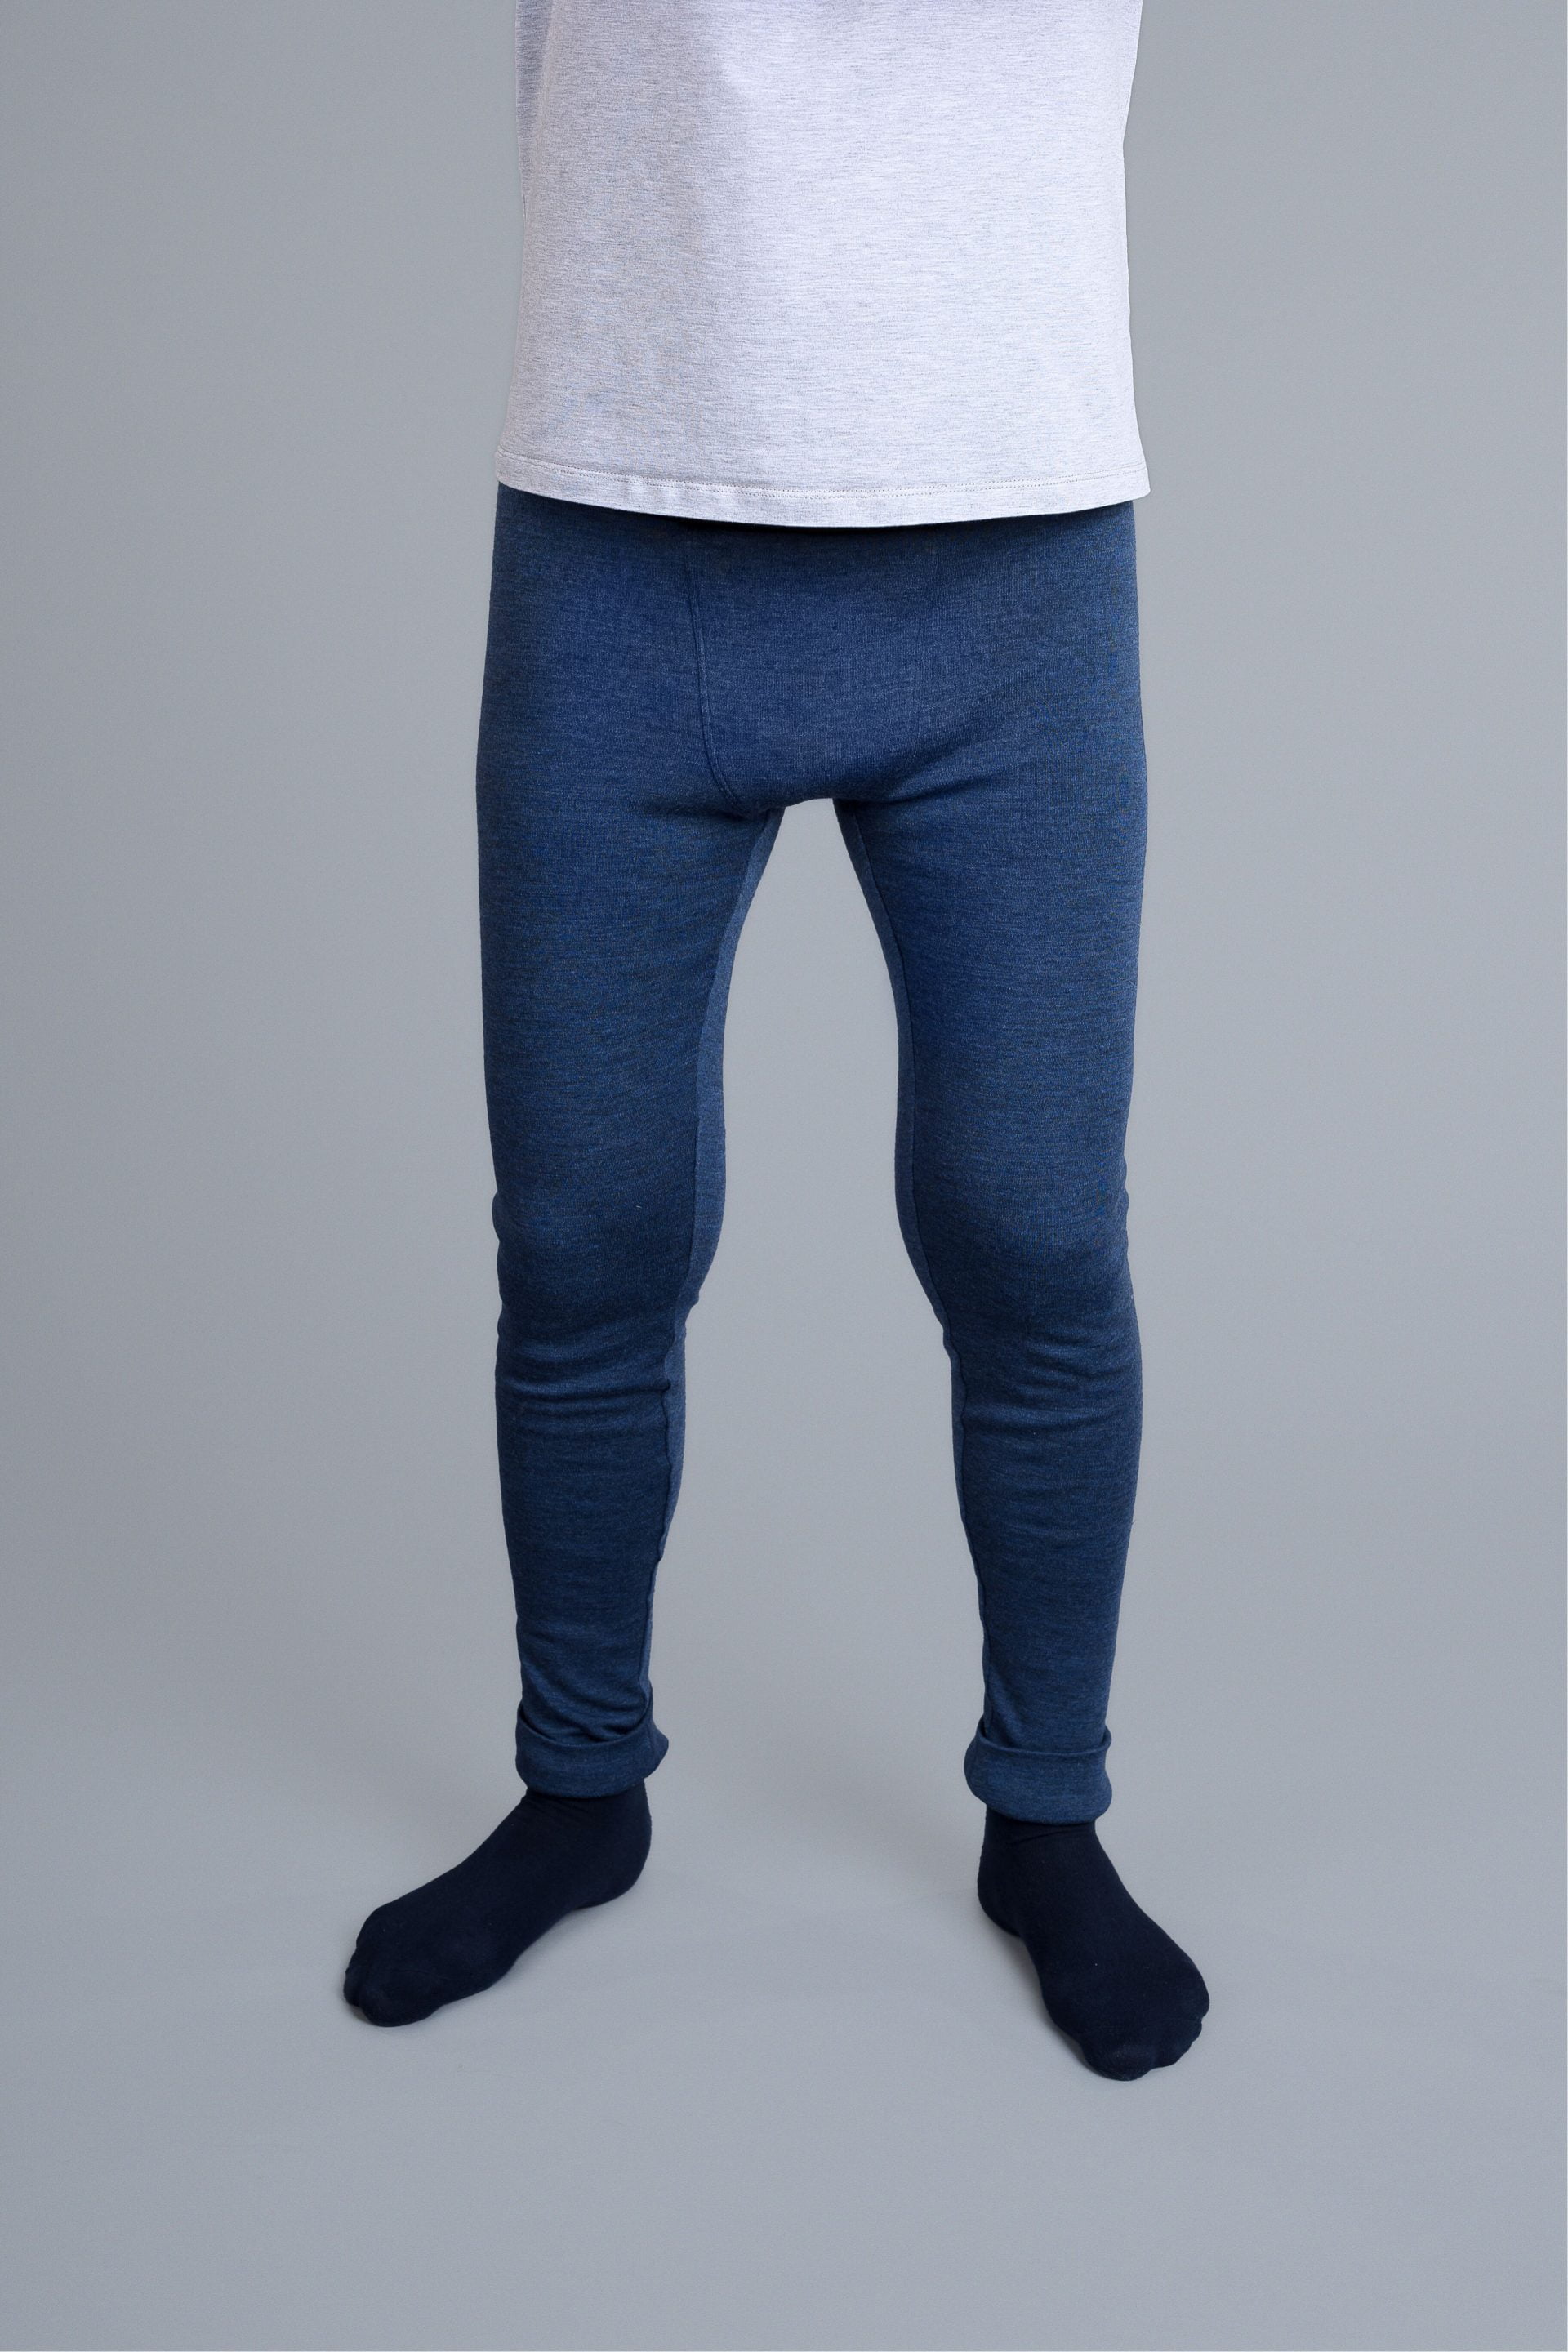 Men's leggings PDF sewing pattern